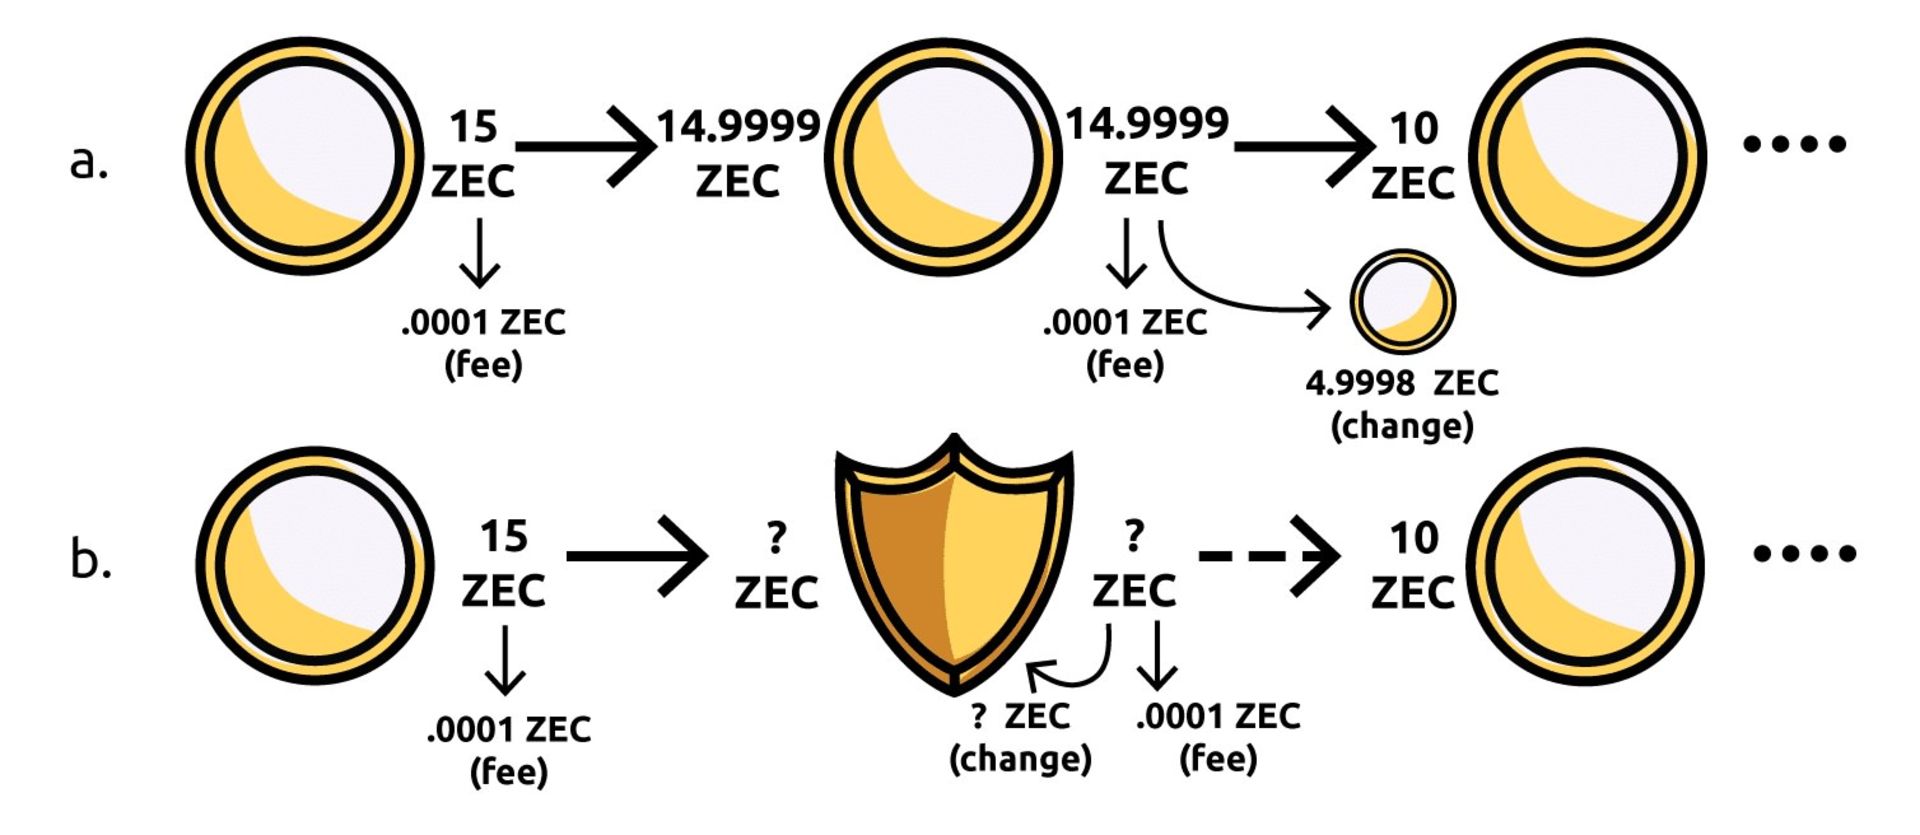 انواع تراکنش زی کش / Zcash Transactions